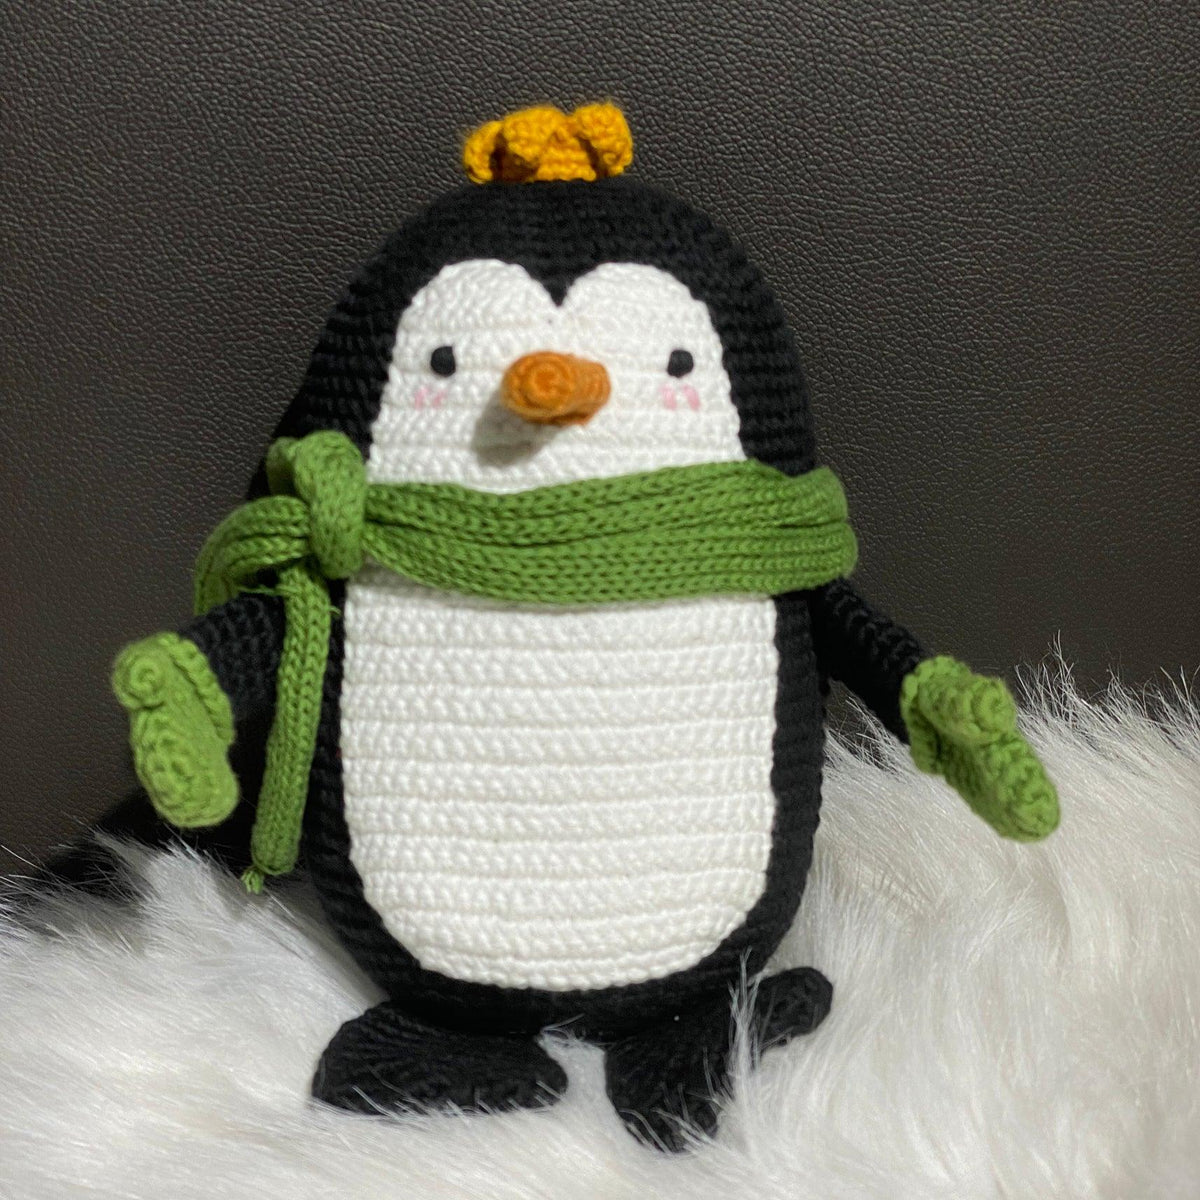 May's Hand Penguin Crochet - Kids Haven